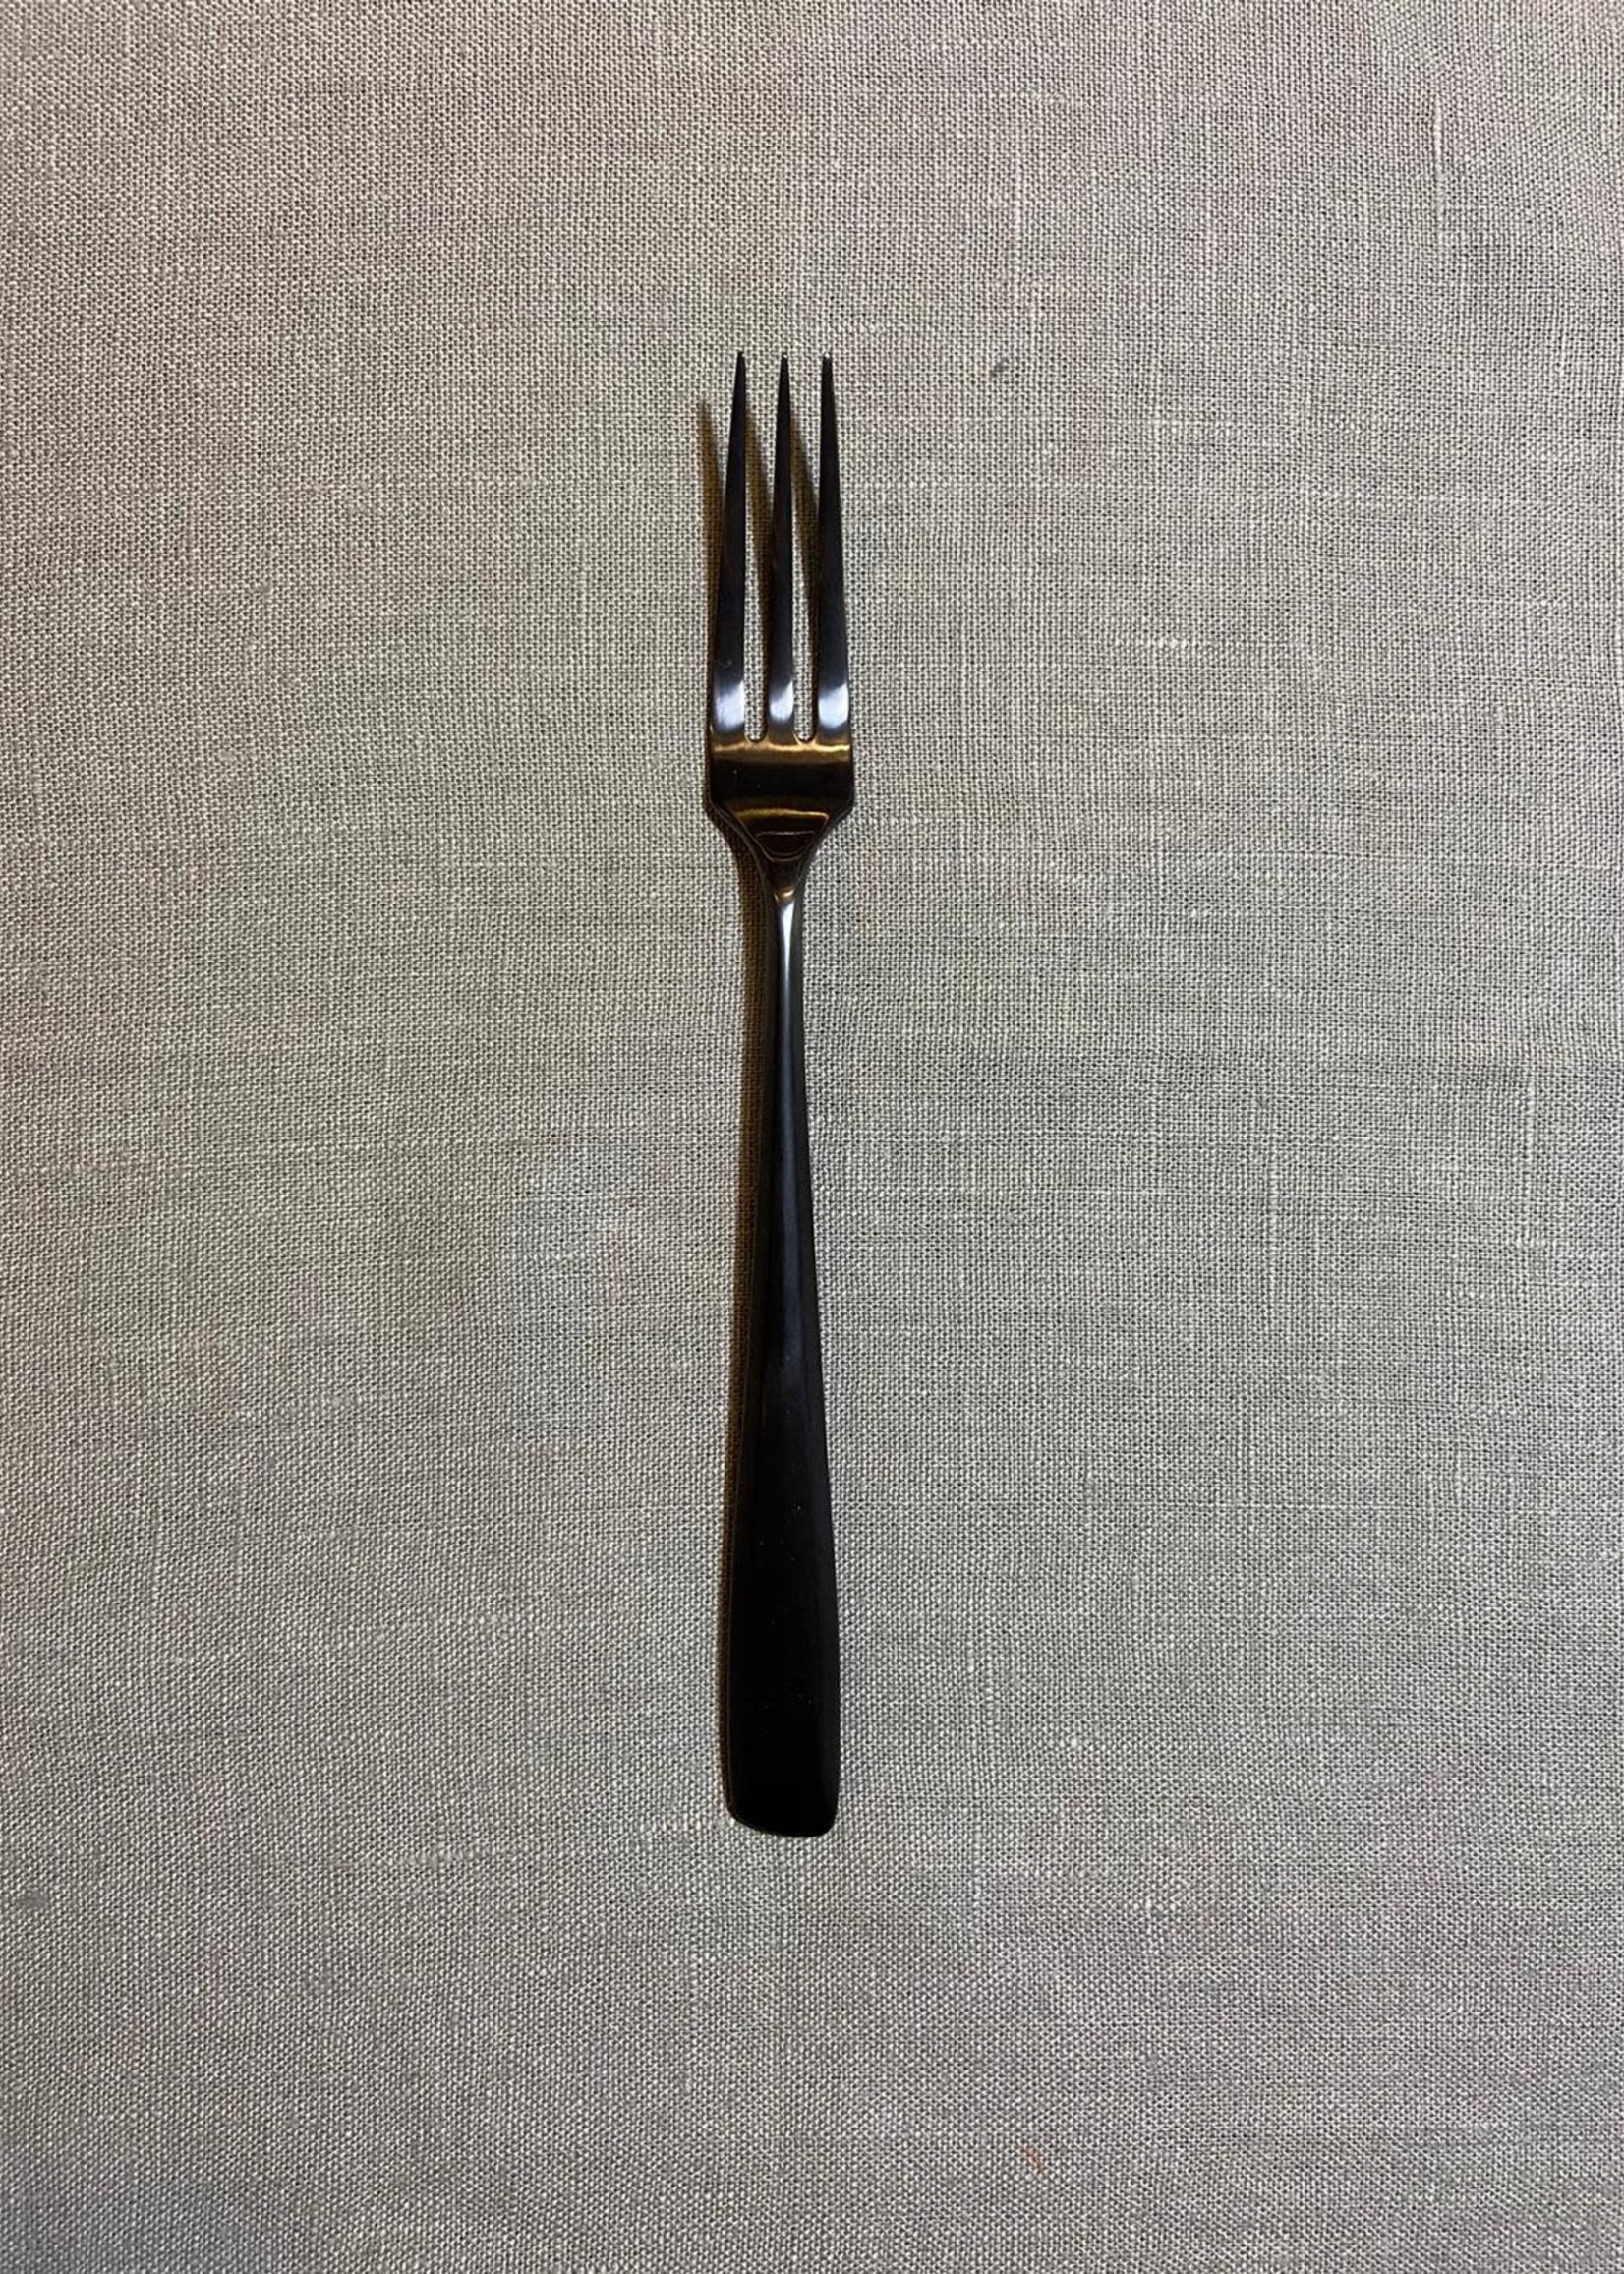 Serax Ann Demeulemeester Table Fork Zoë 'Black'